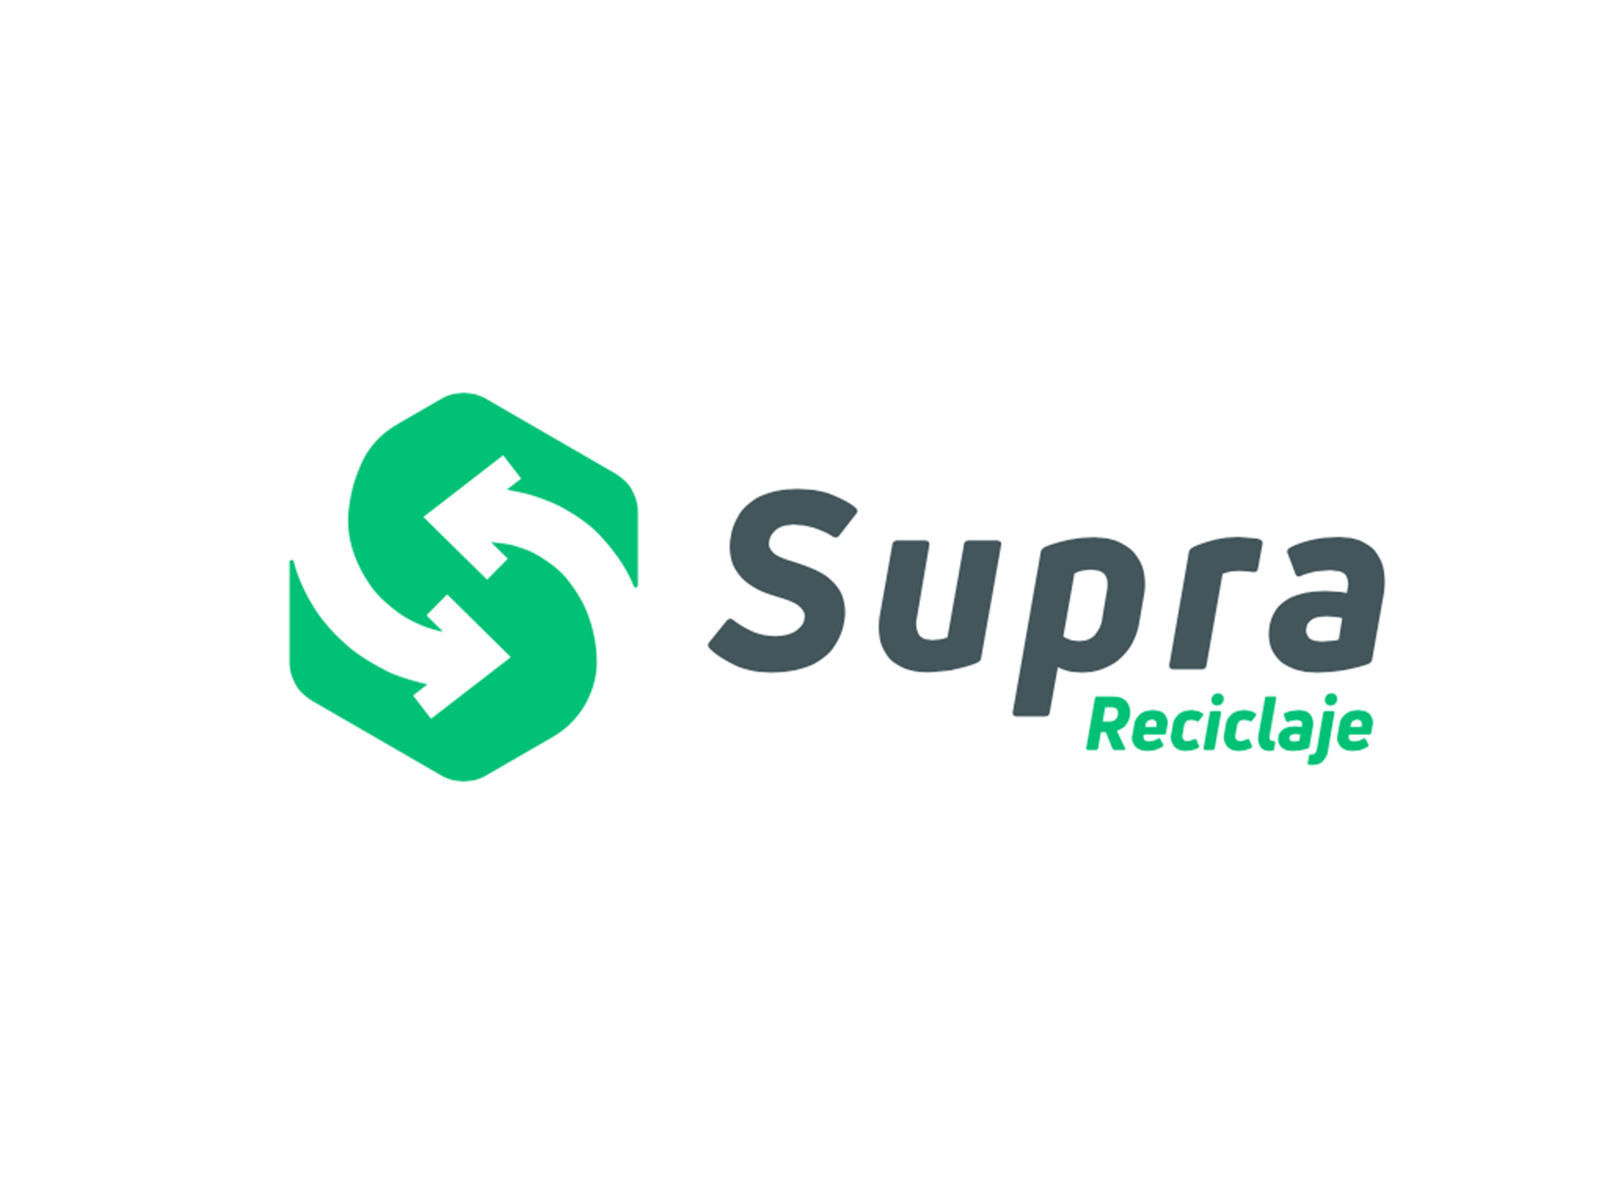 Supra - Logo by Tavito Diaz on Dribbble